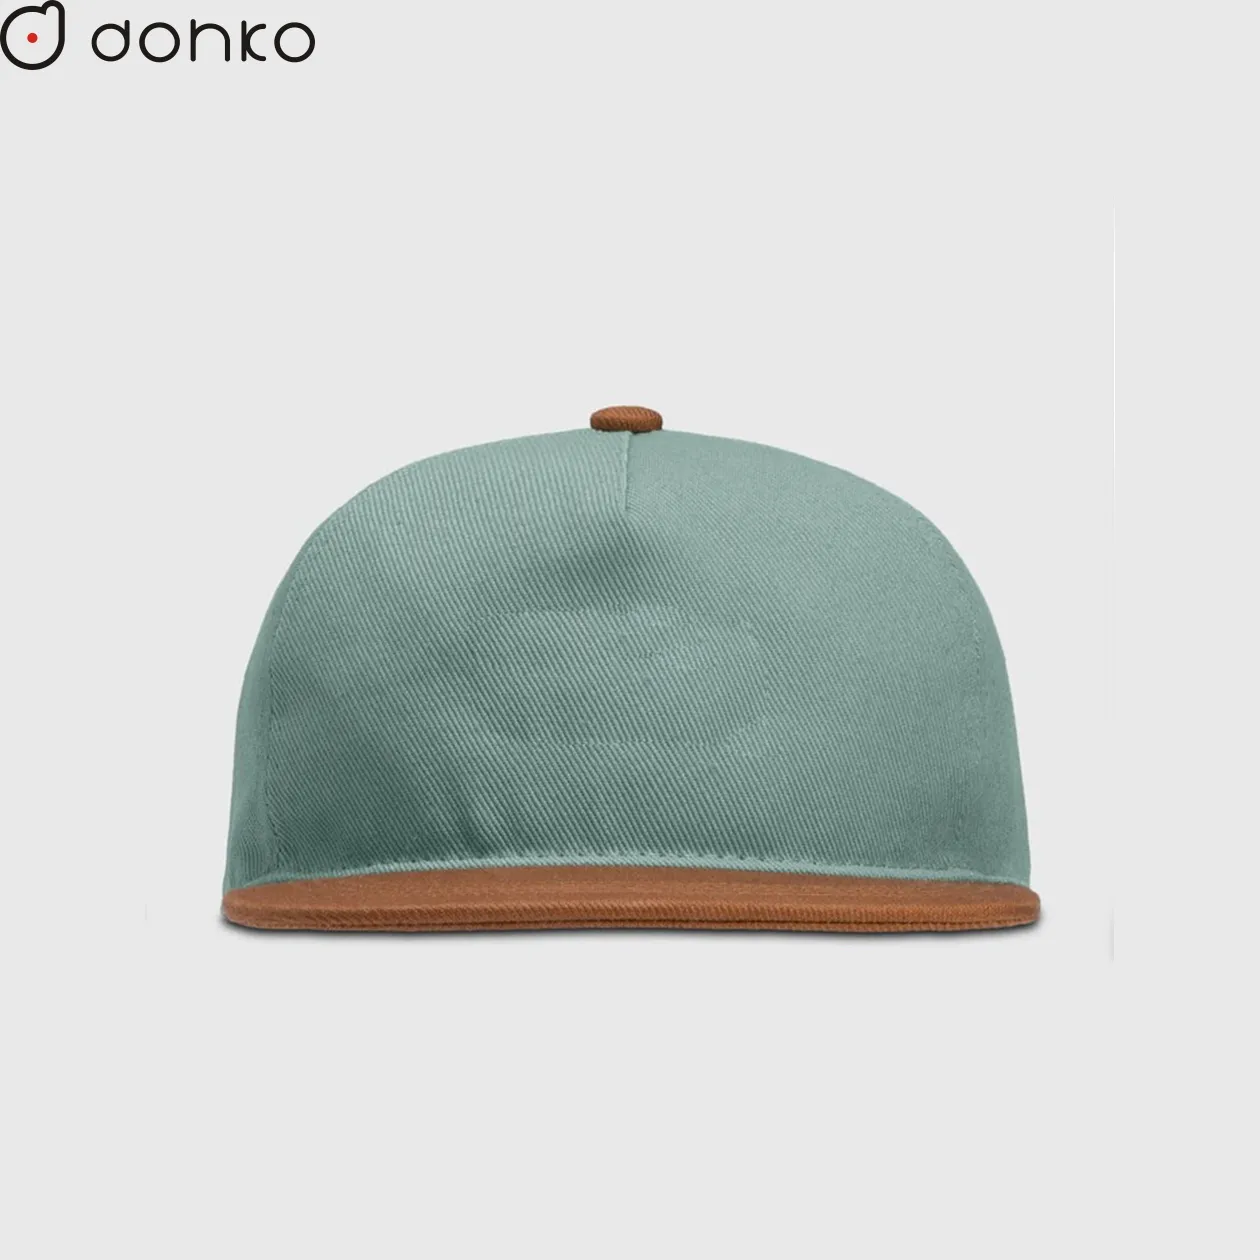 シェニール刺繍またはパフ印刷ロゴ付きのカスタマイズされたキャップ高品質のツイルスナップバックストリートウェア帽子